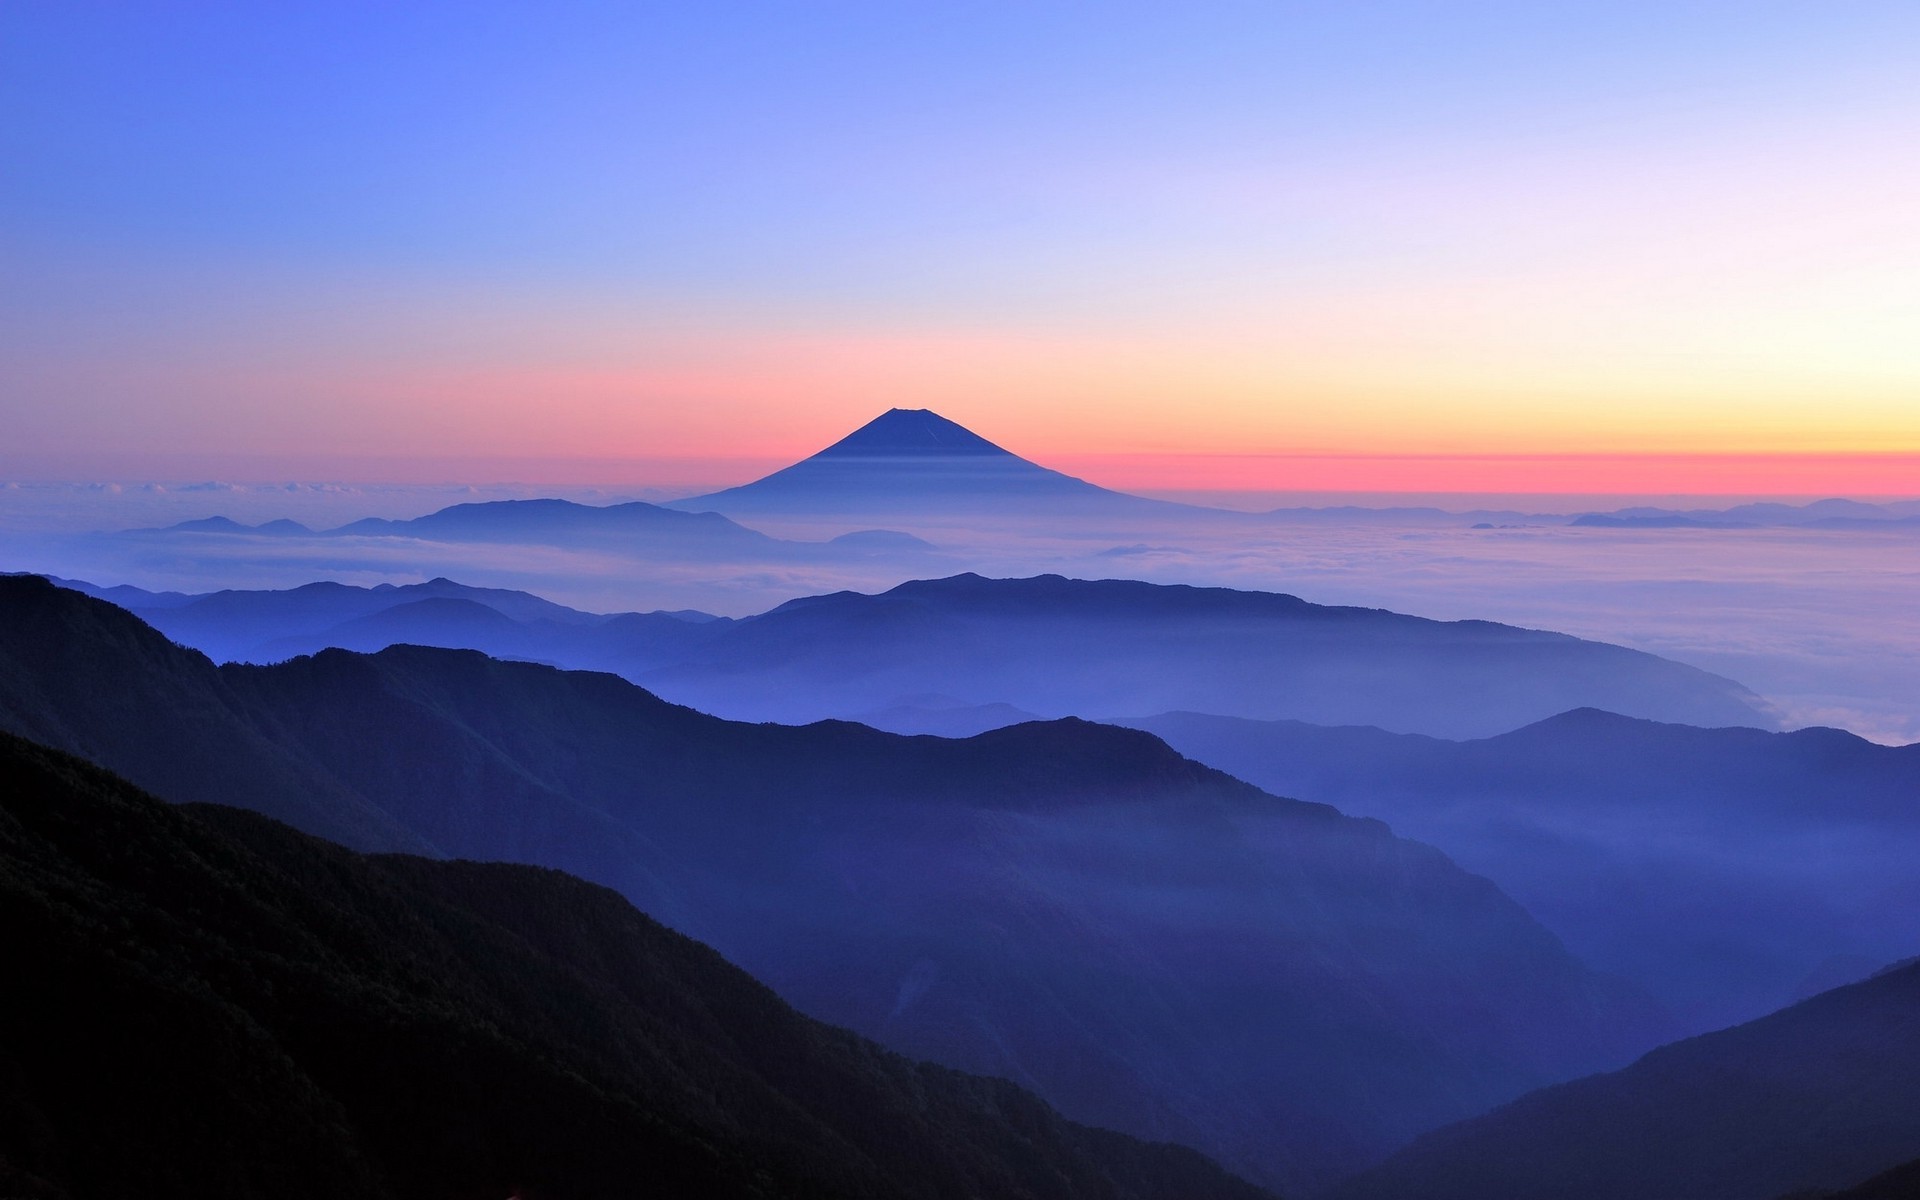 Wallpaper, 1920x1200 px, blue, Japan, landscape, mist, mountain, nature, sunrise 1920x1200